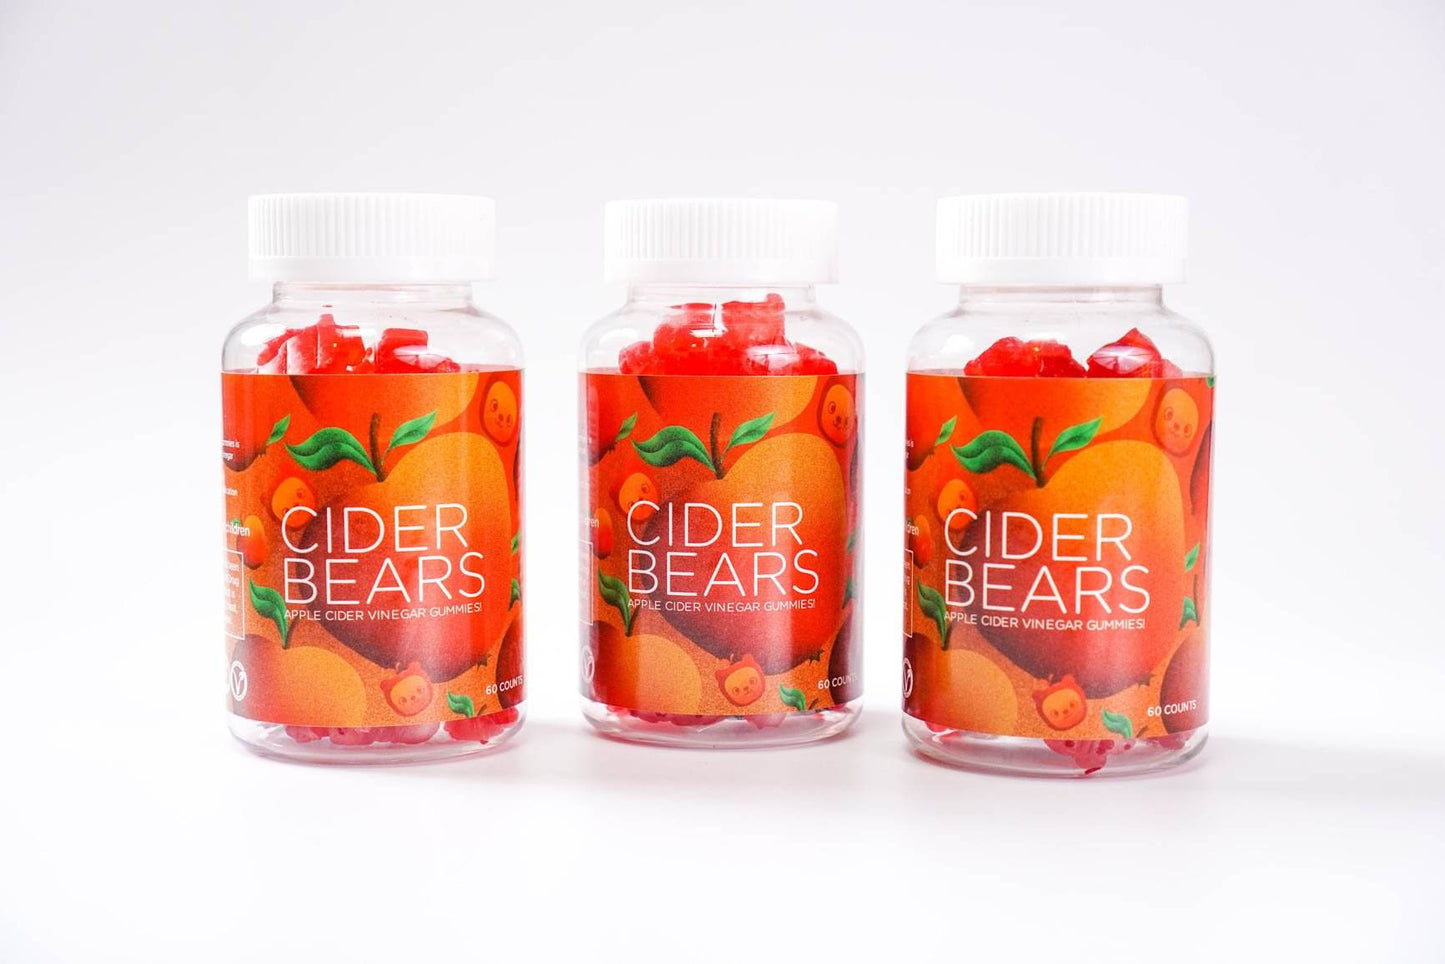 CiderBears Apple Cider Vinegar Gummy Bears - CiderBears